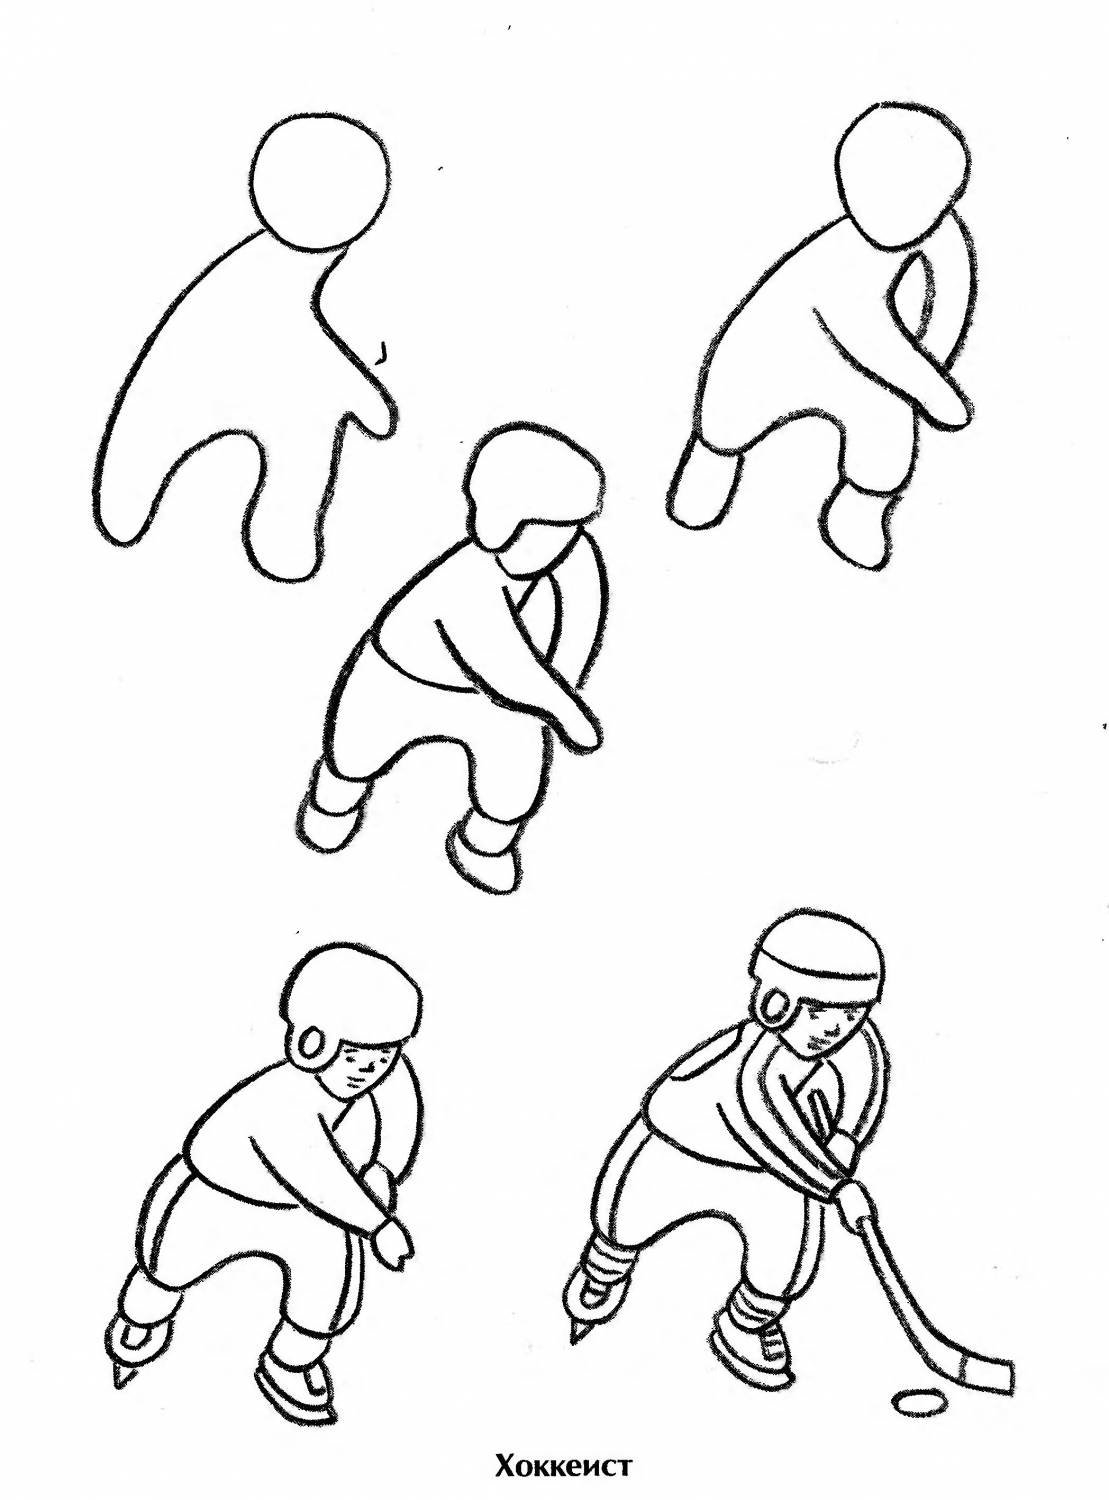 Как нарисовать хоккеиста: поэтапная инструкция